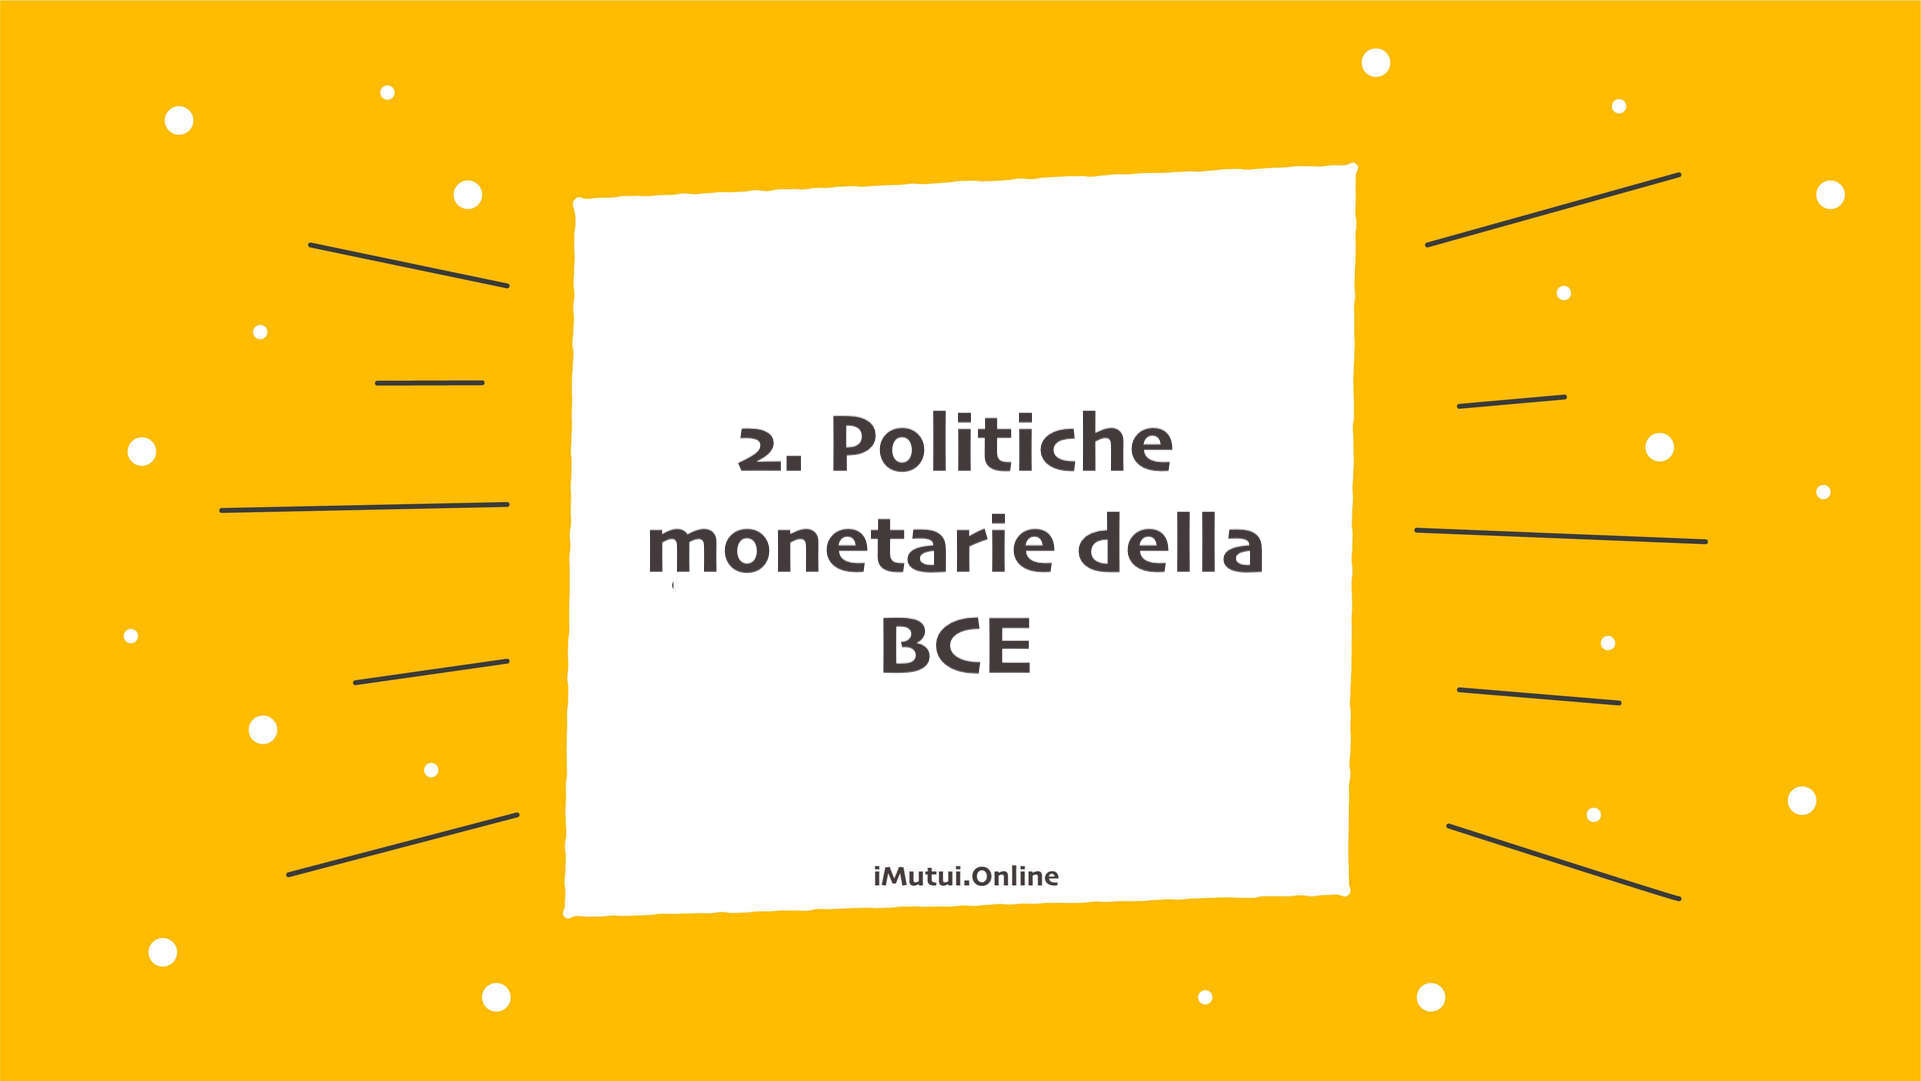 2. Politiche monetarie della BCE